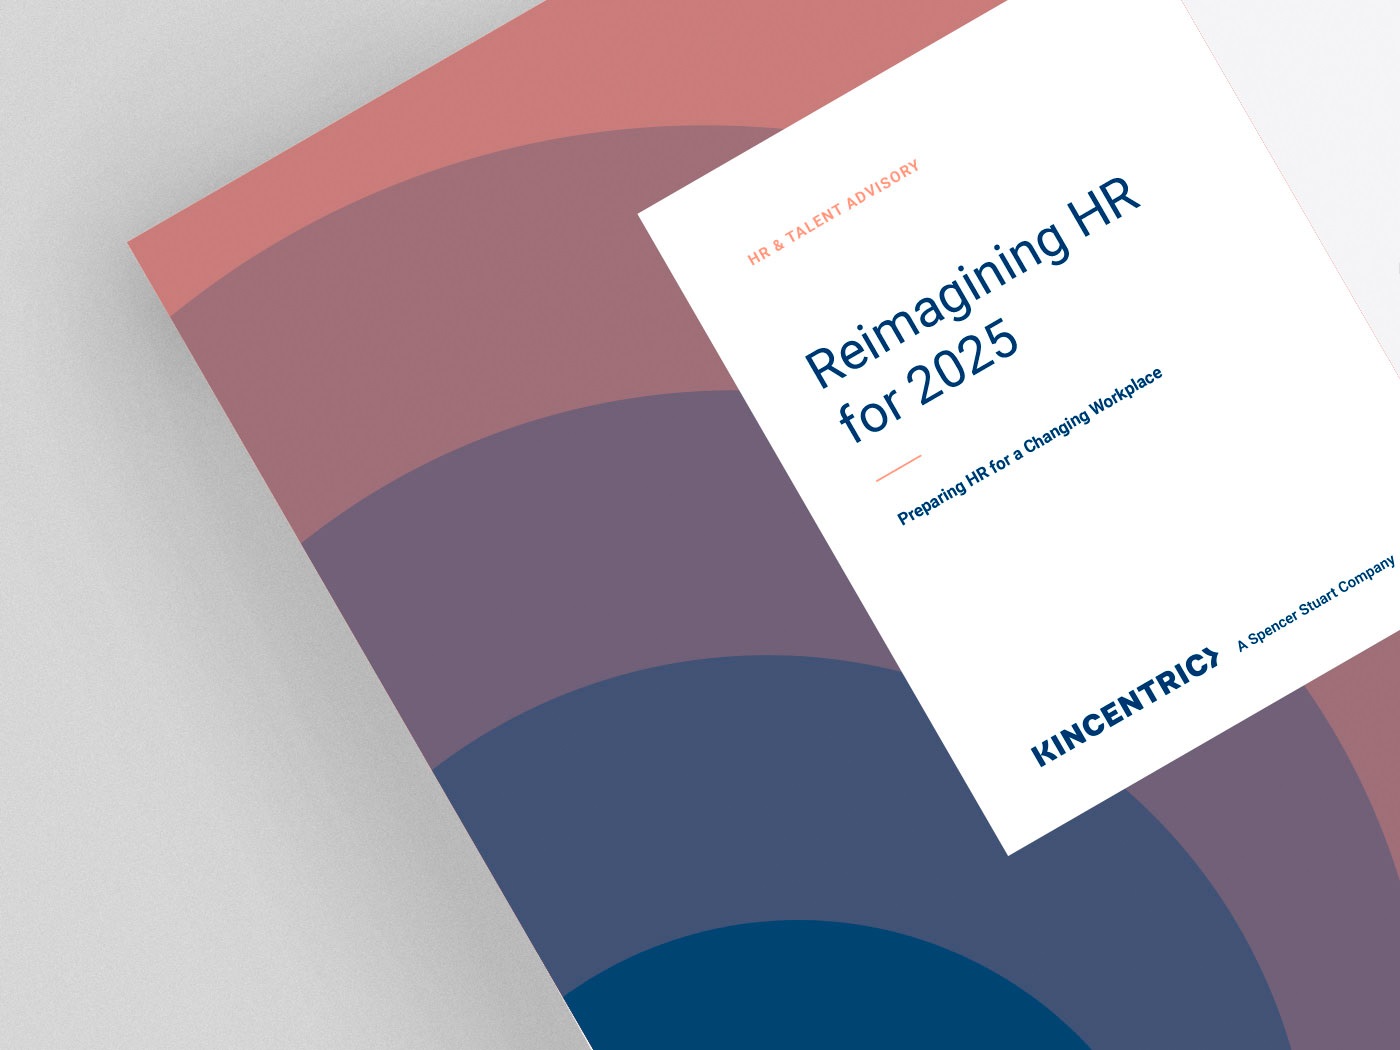 Reimagining HR for 2025